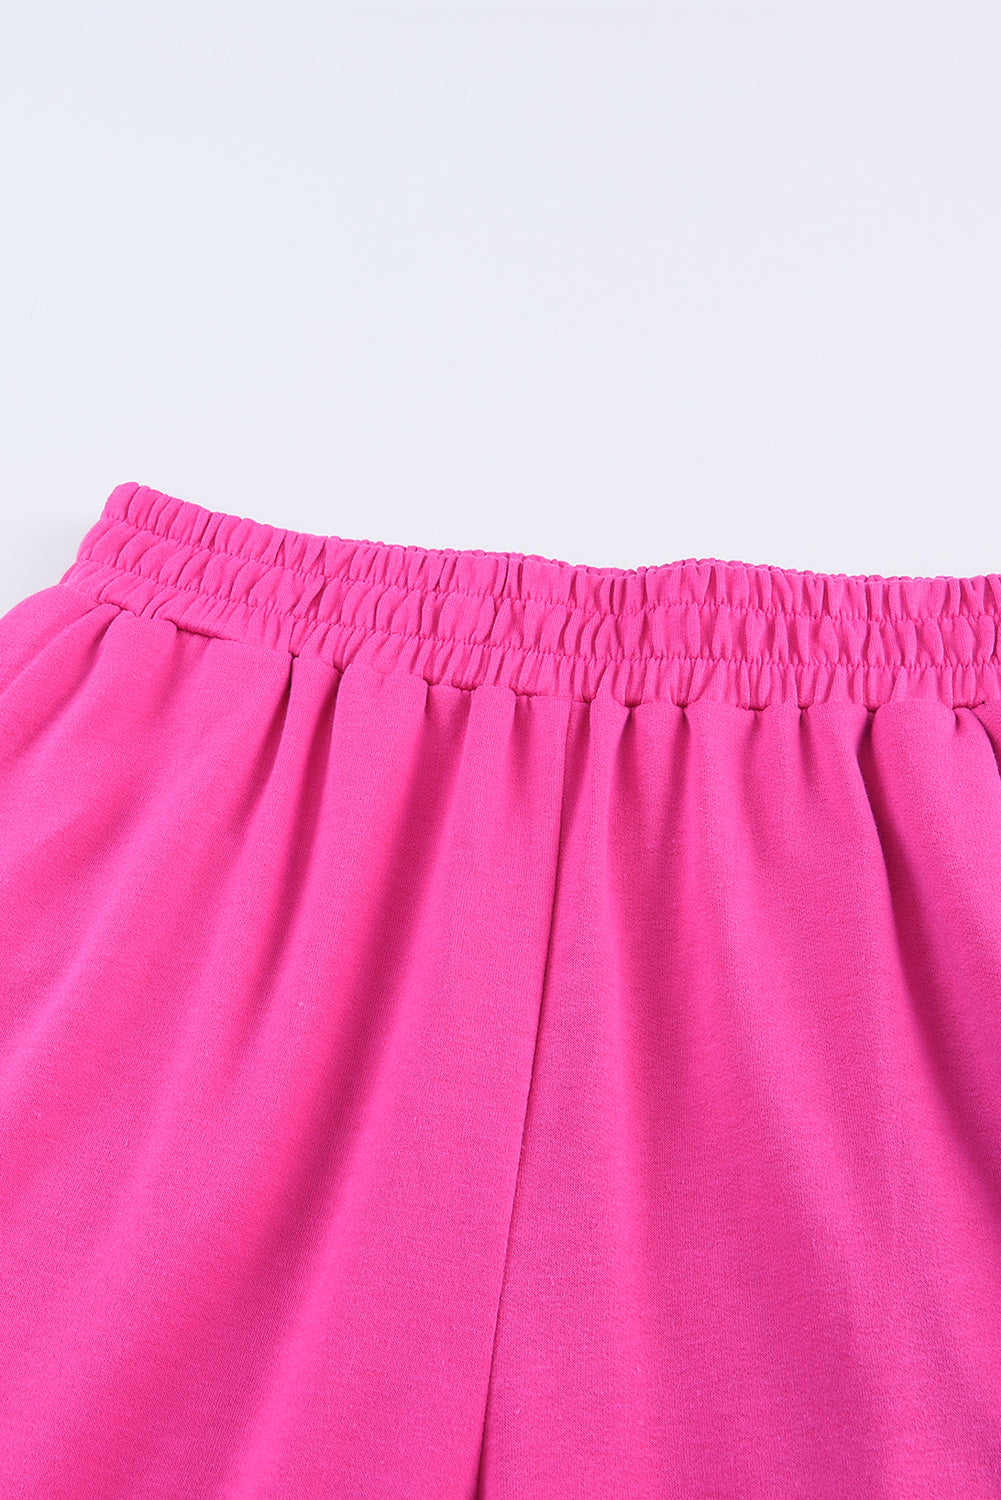 Pantaloni a gamba larga con tasche in vita elastica rosa